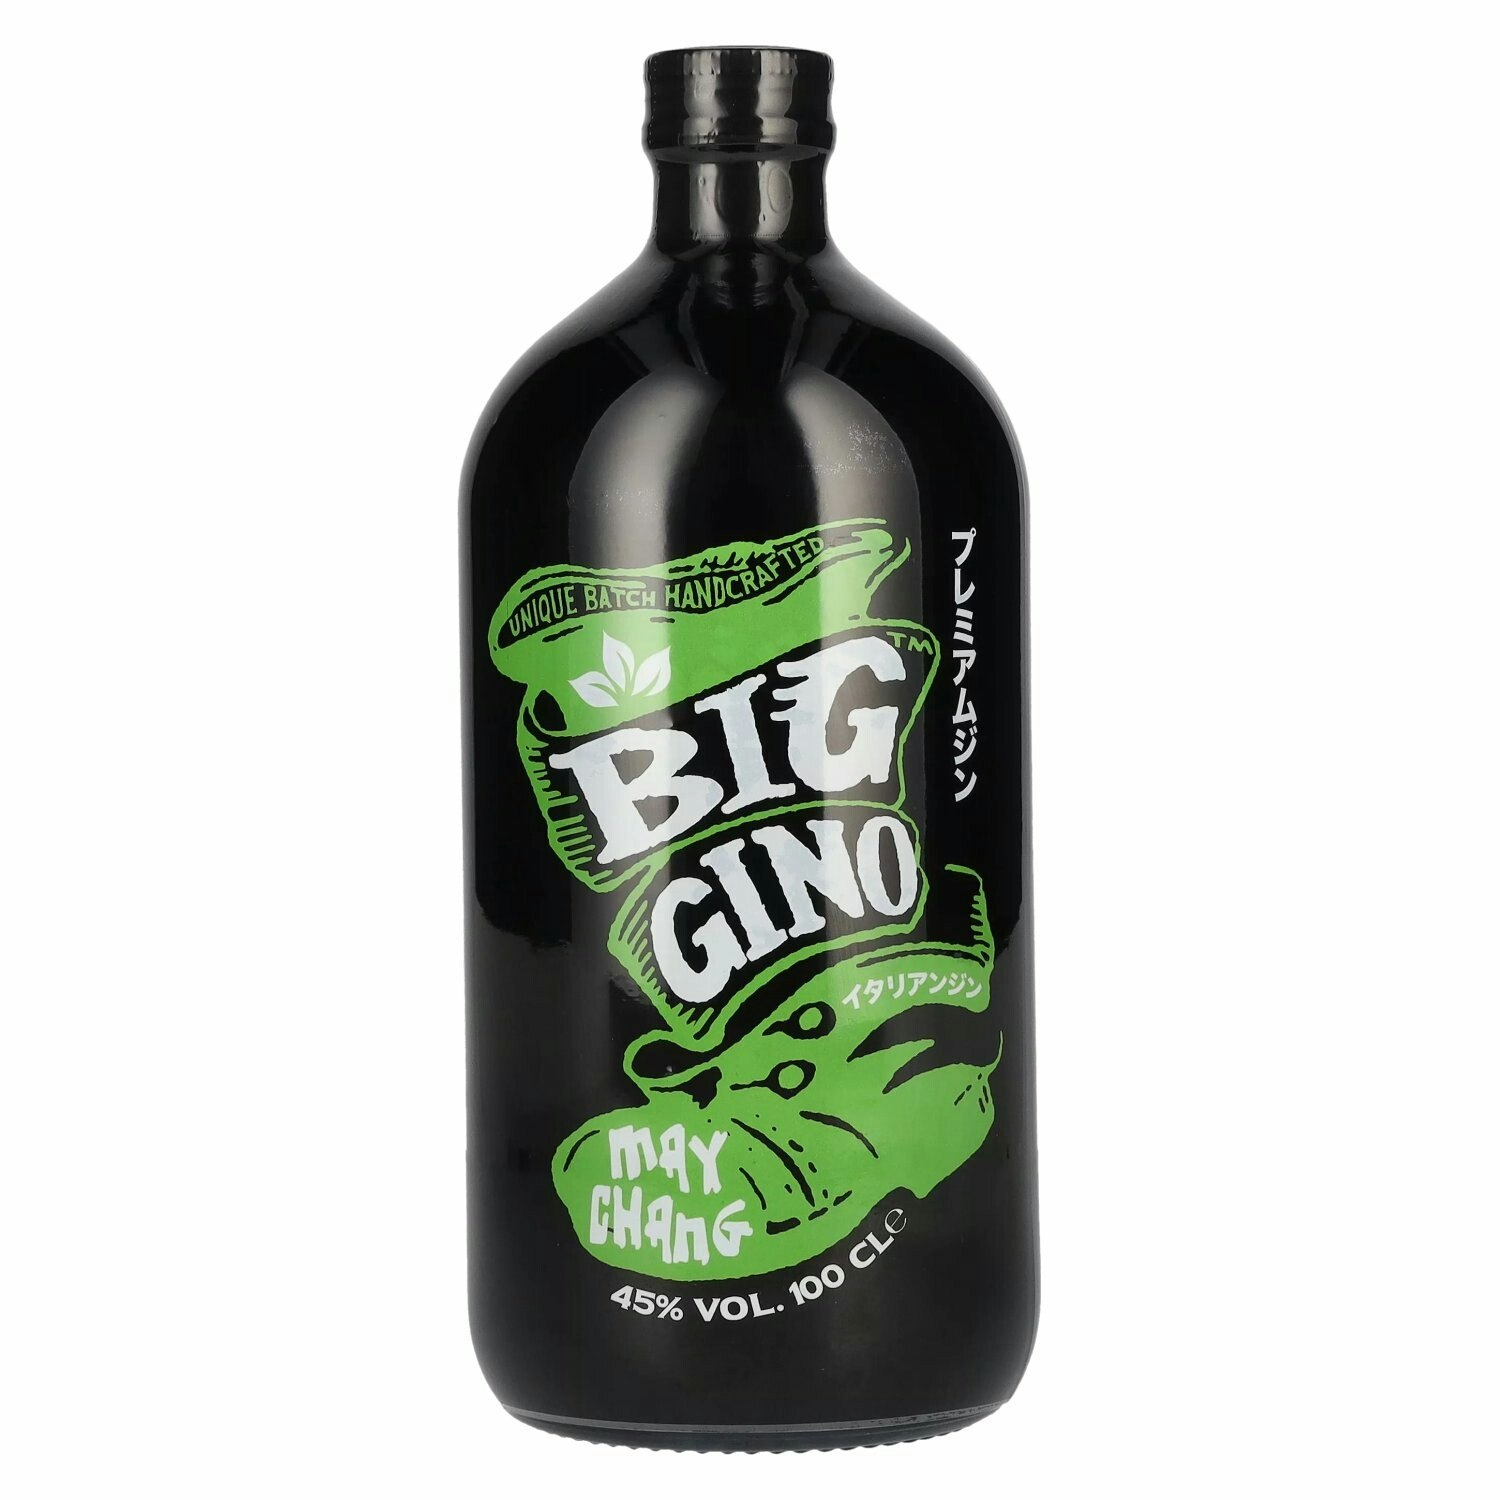 Big Gino Gin MAY CHANG 45% Vol. 1l